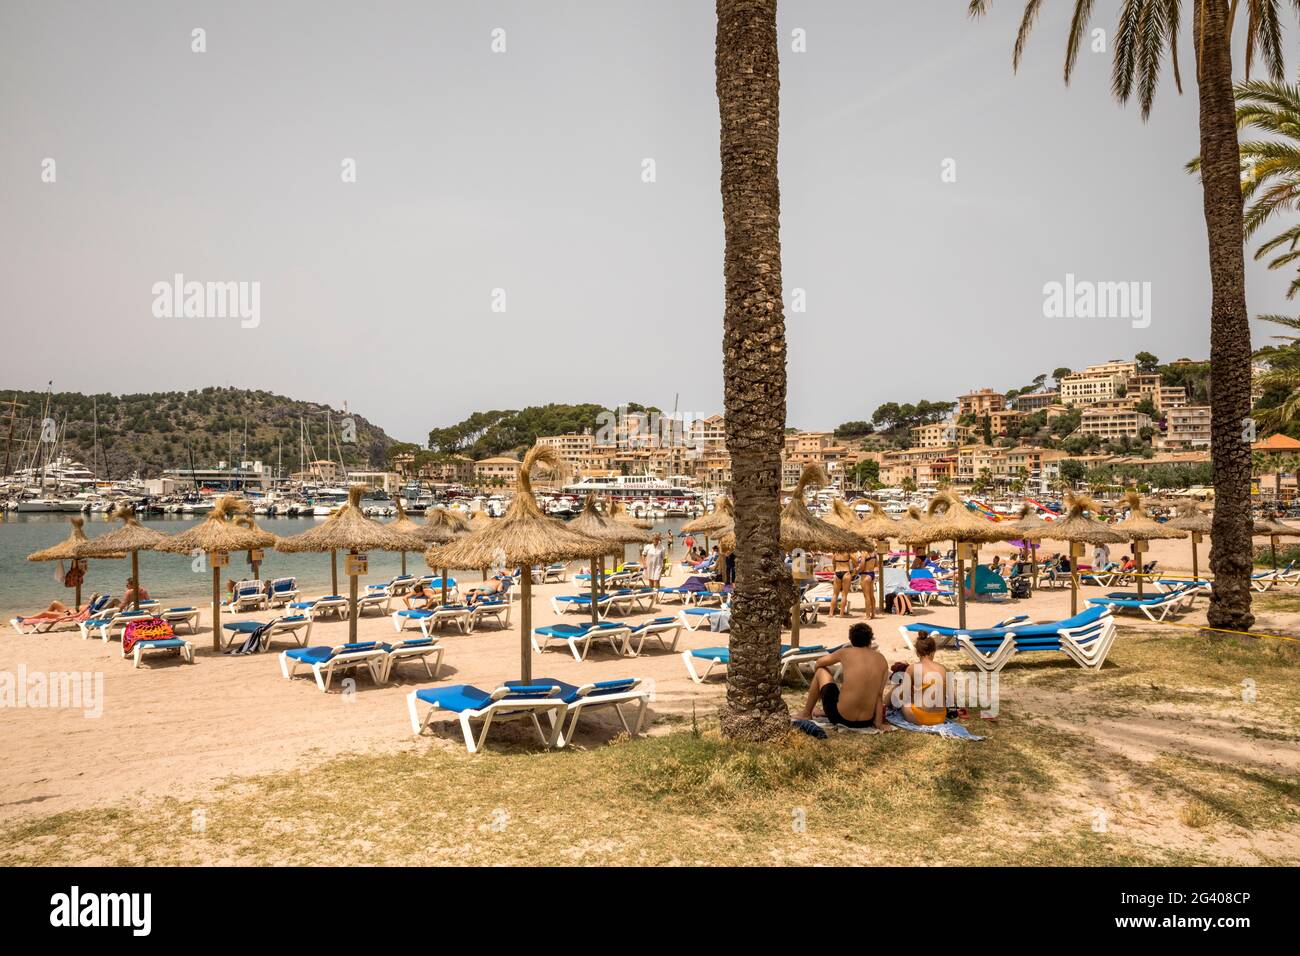 Port de Soller, Mallorca, Spanien. Juni 2021. Strandleben in Port de Soller auf Mallorca. Quelle: John-Patrick Morarescu/ZUMA Wire/Alamy Live News Stockfoto